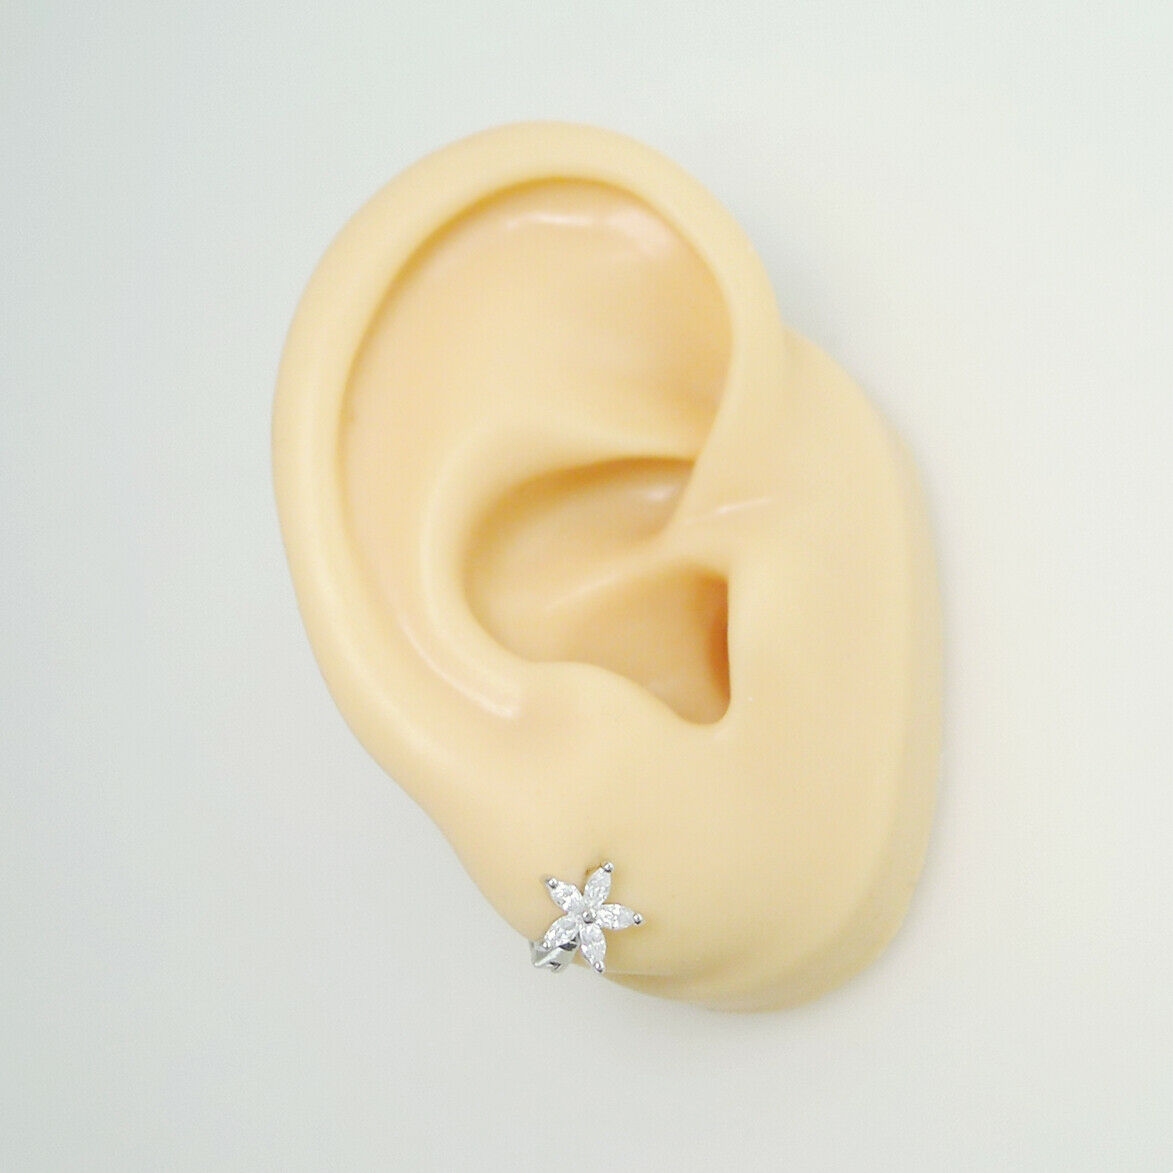 Sterling Silver White CZ Flower Huggie Hoop Earrings Jewellery 6mm - sugarkittenlondon